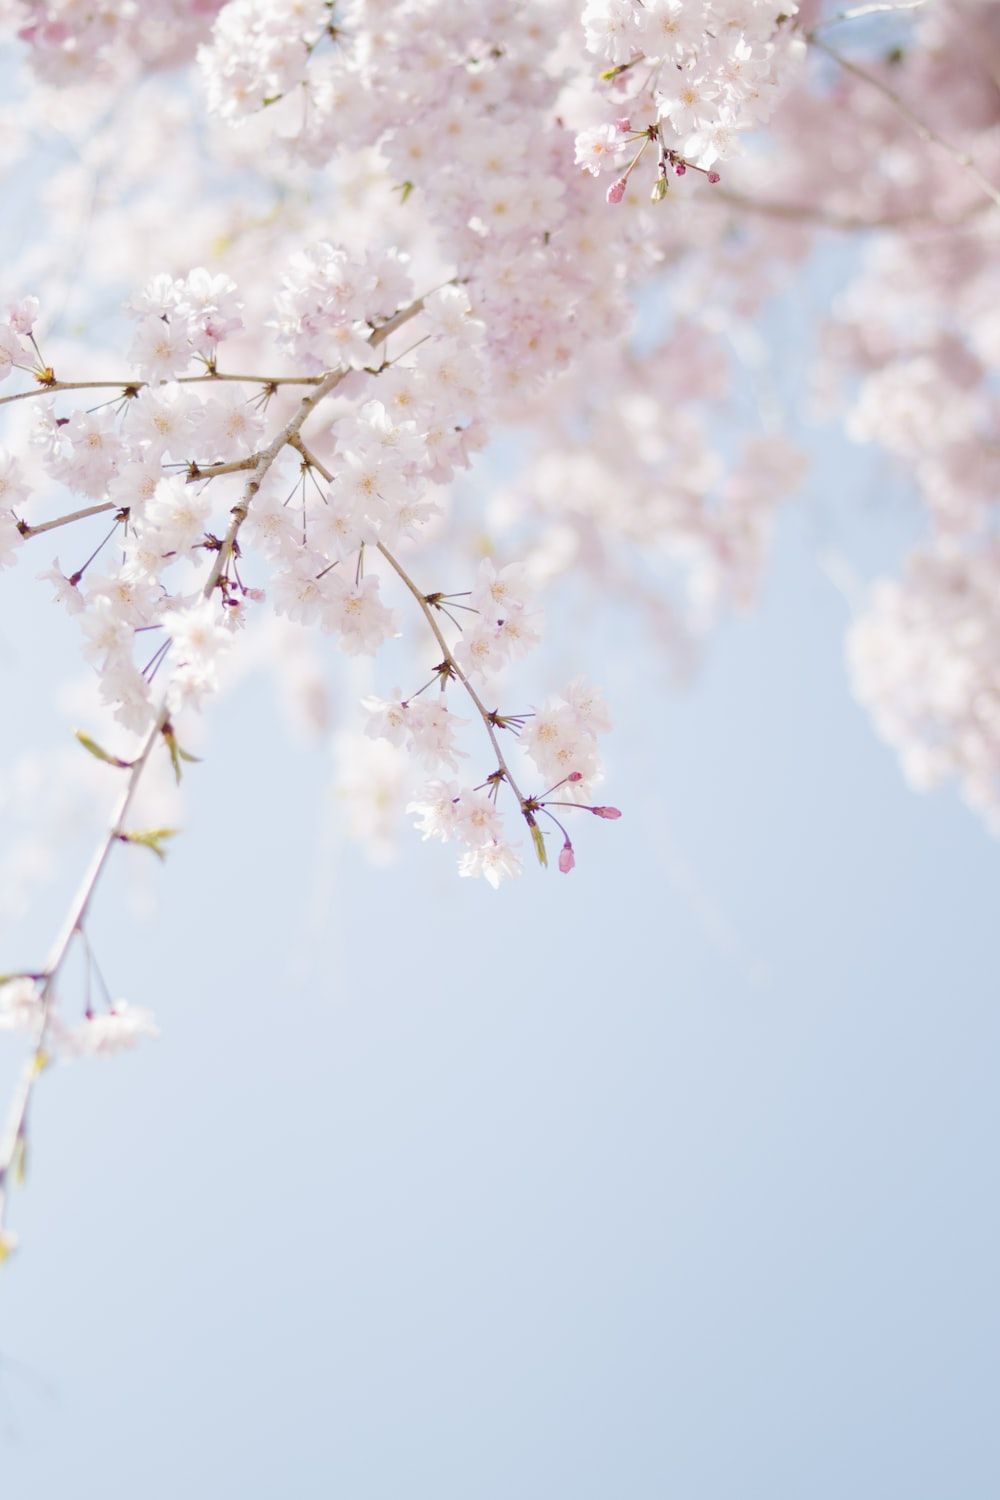 Cherry blossoms against a blue sky - Cherry blossom, spring, cherry